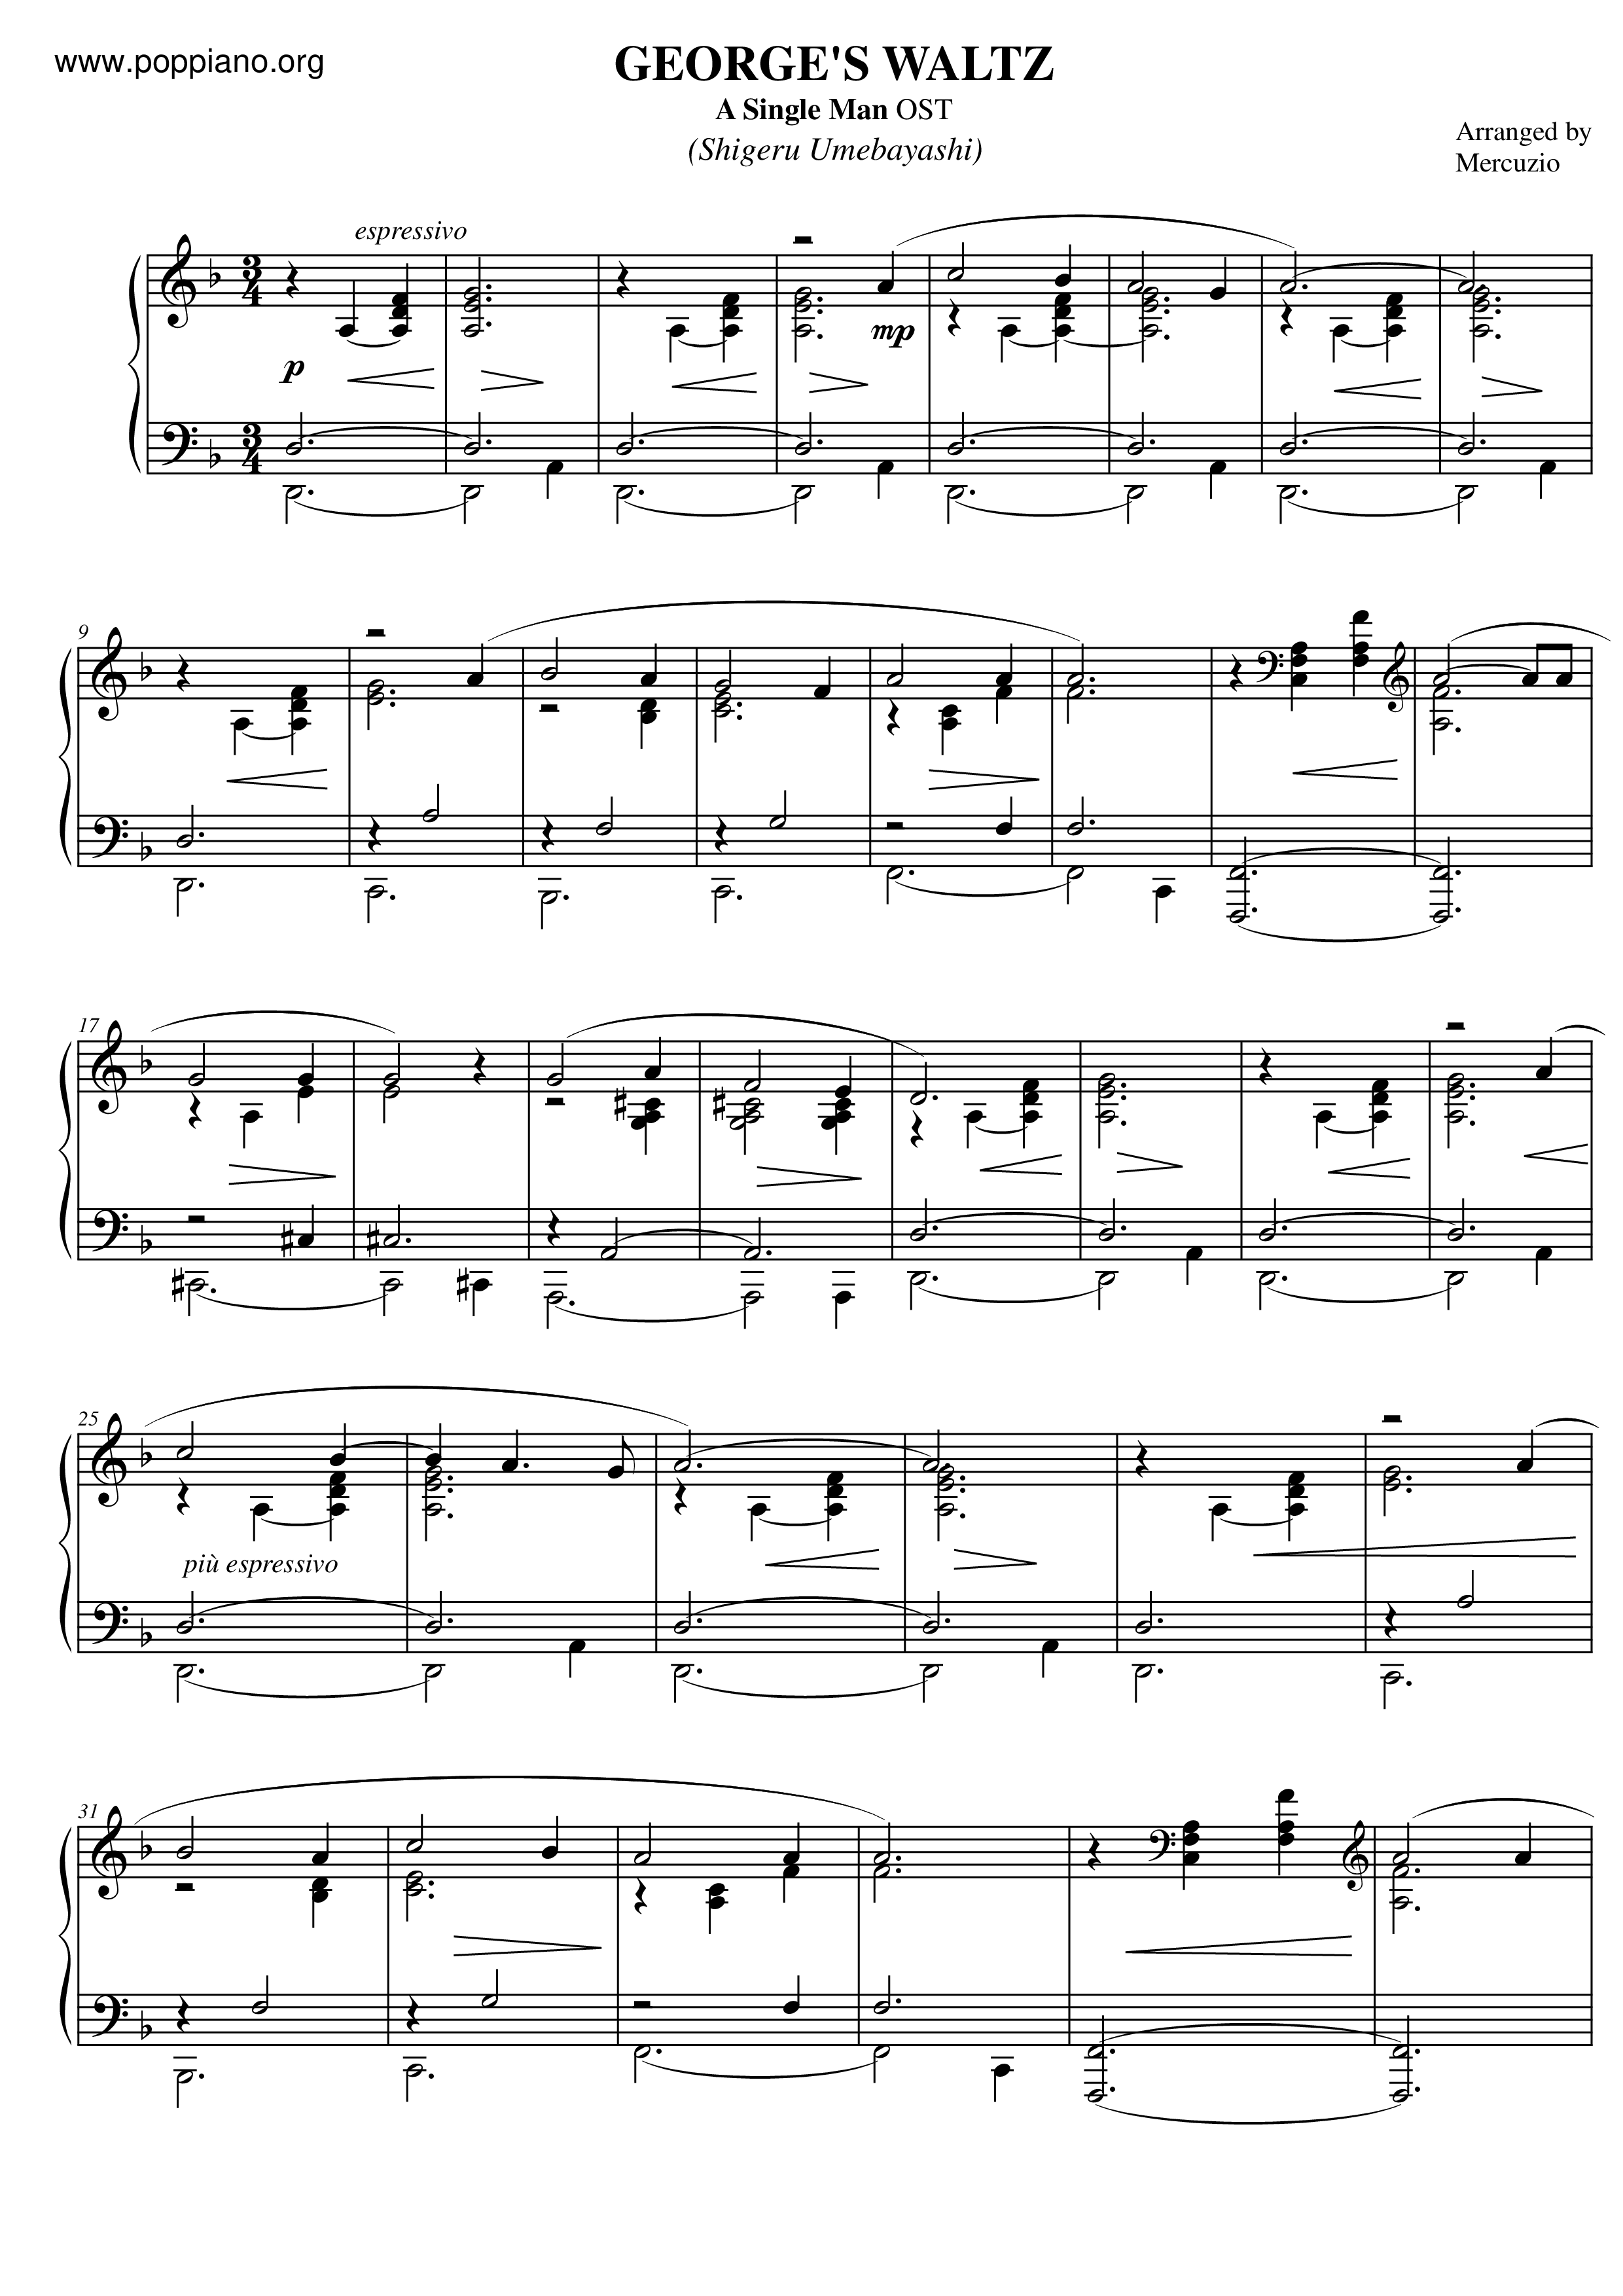 A Single Man - George's Waltz Score